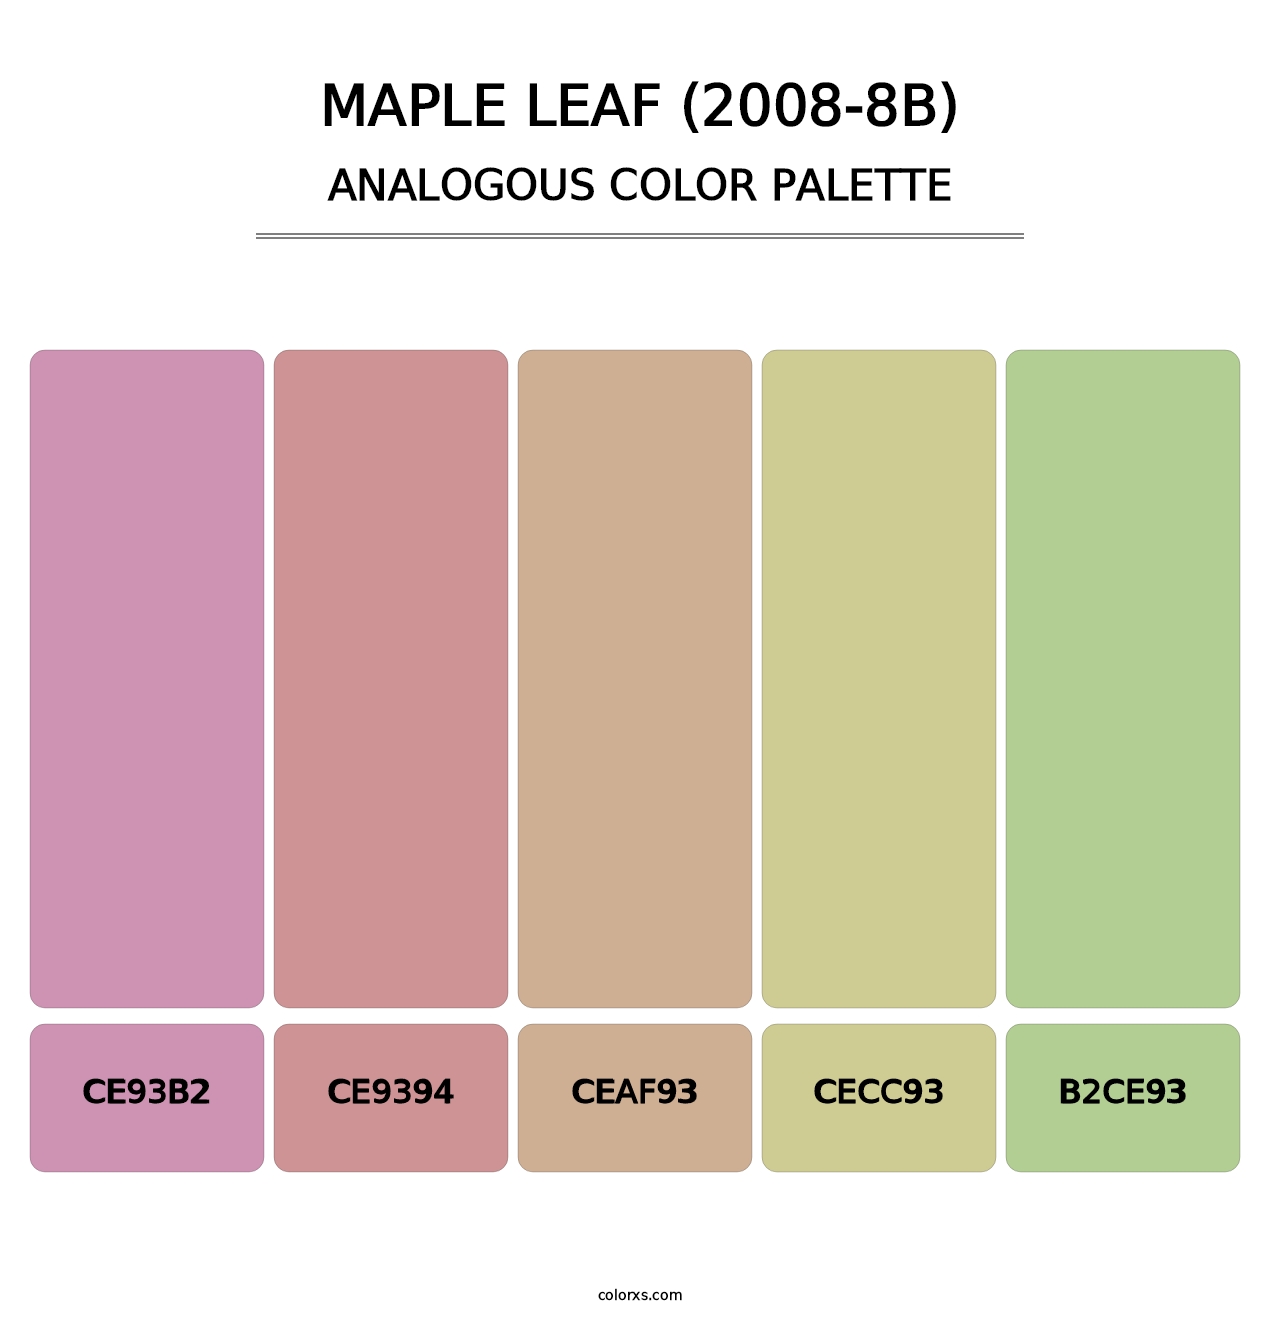 Maple Leaf (2008-8B) - Analogous Color Palette